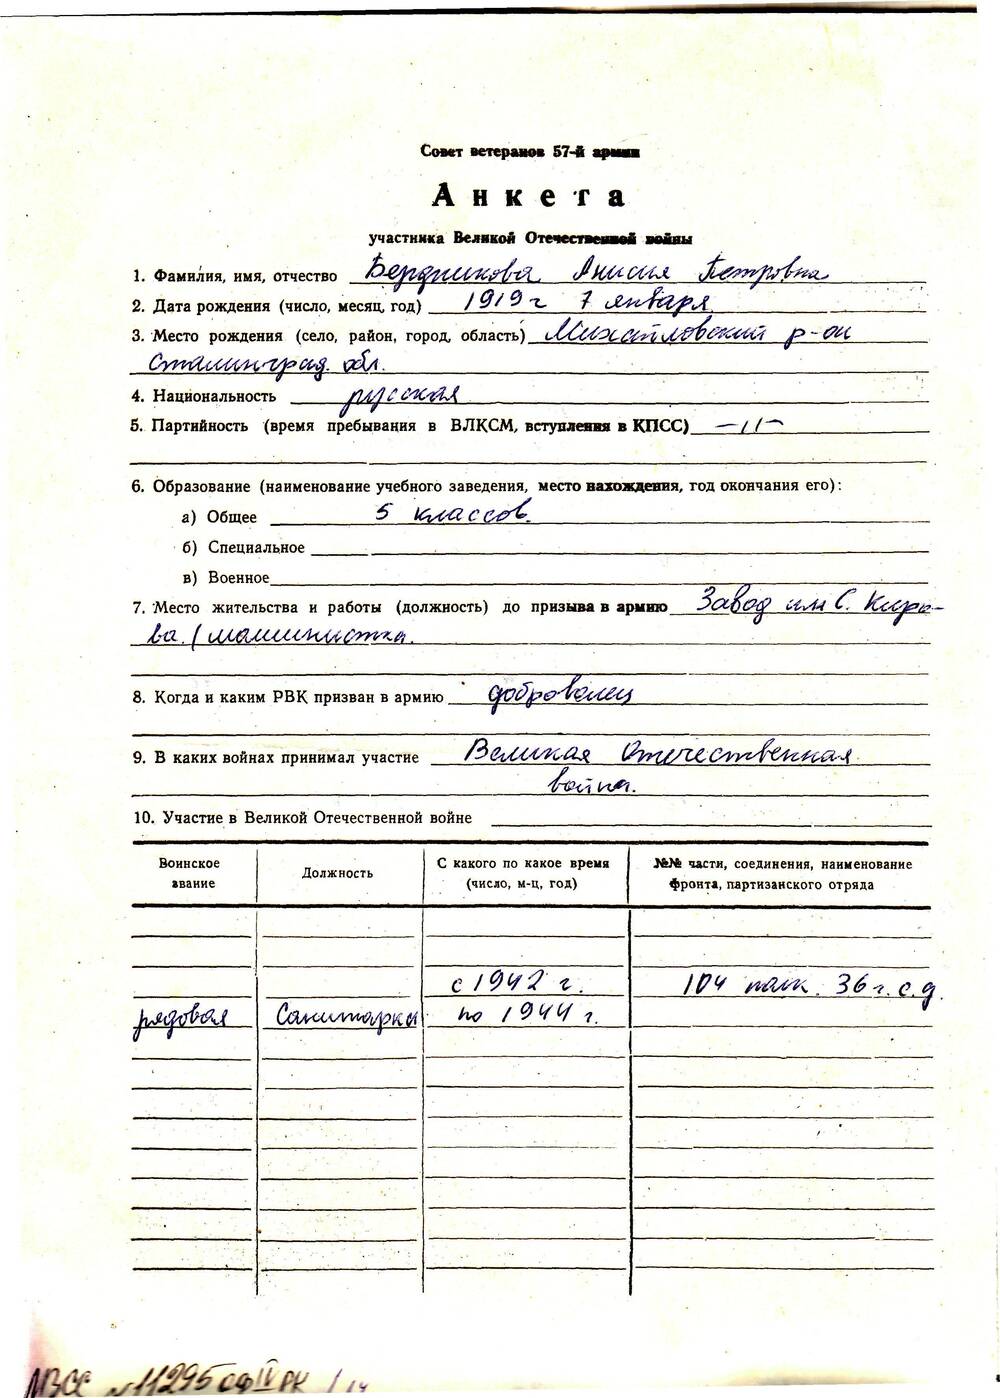 Анкета ветерана 57 армии Бердникова Анисия Петровна. 1 лист рукопись на типографском бланке.